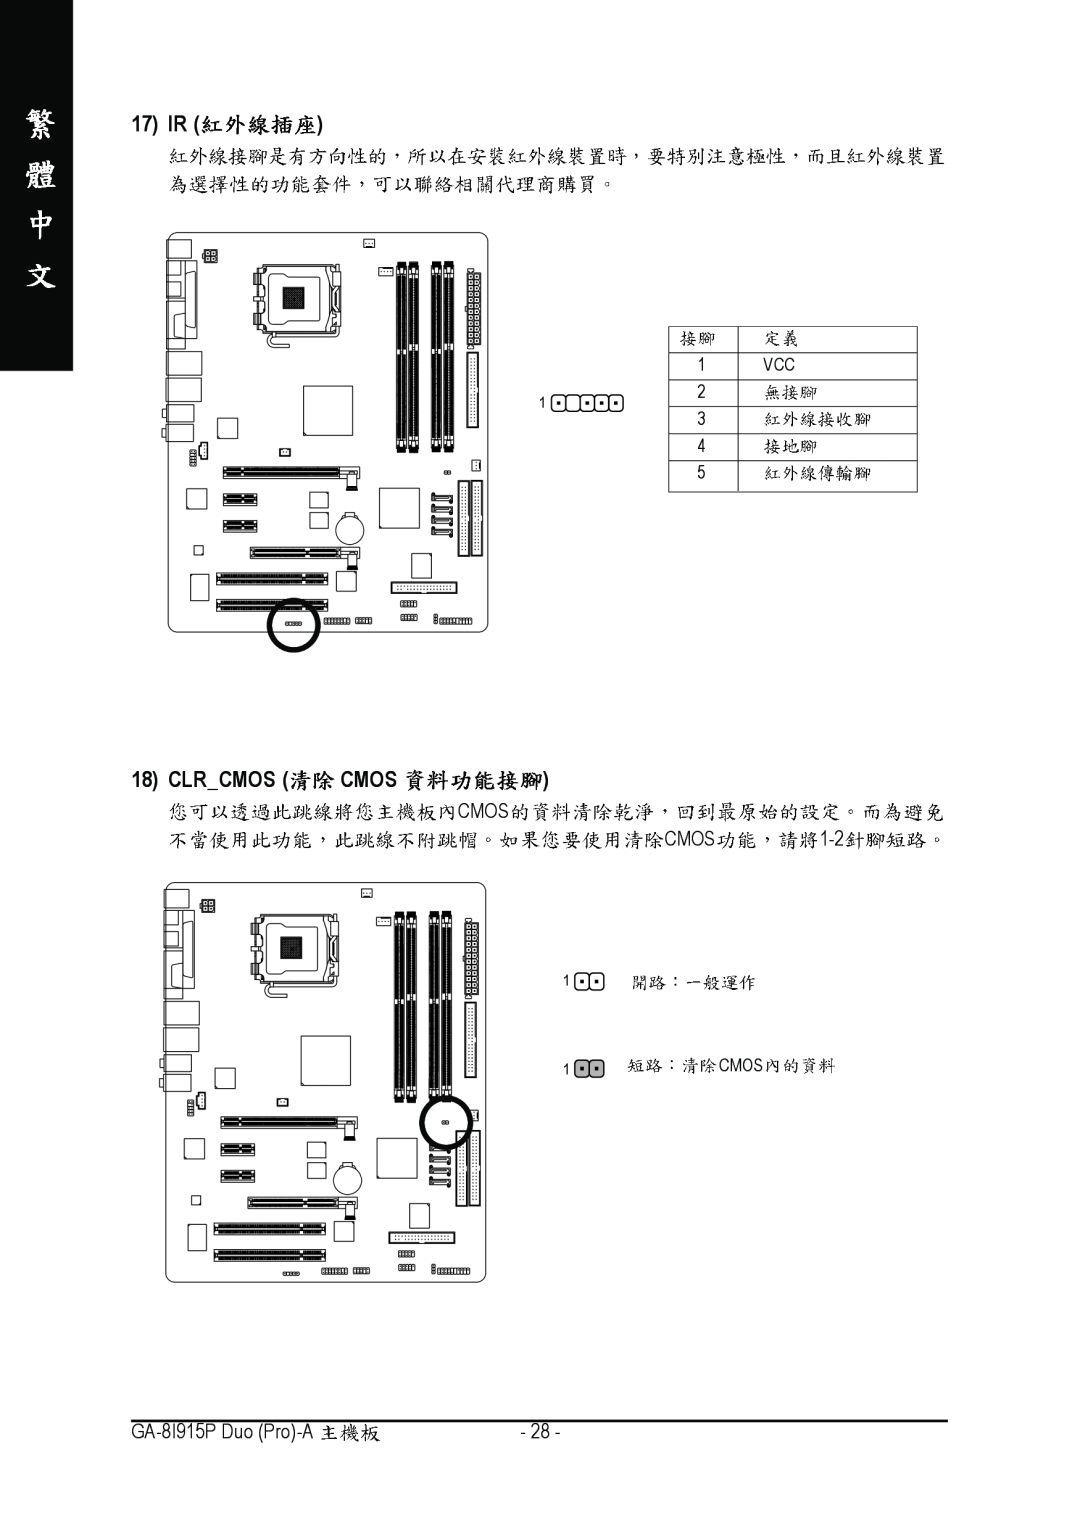 Gigabyte GA-8I915P manual 17 IR, Clrcmos Cmos, 1 VCC 